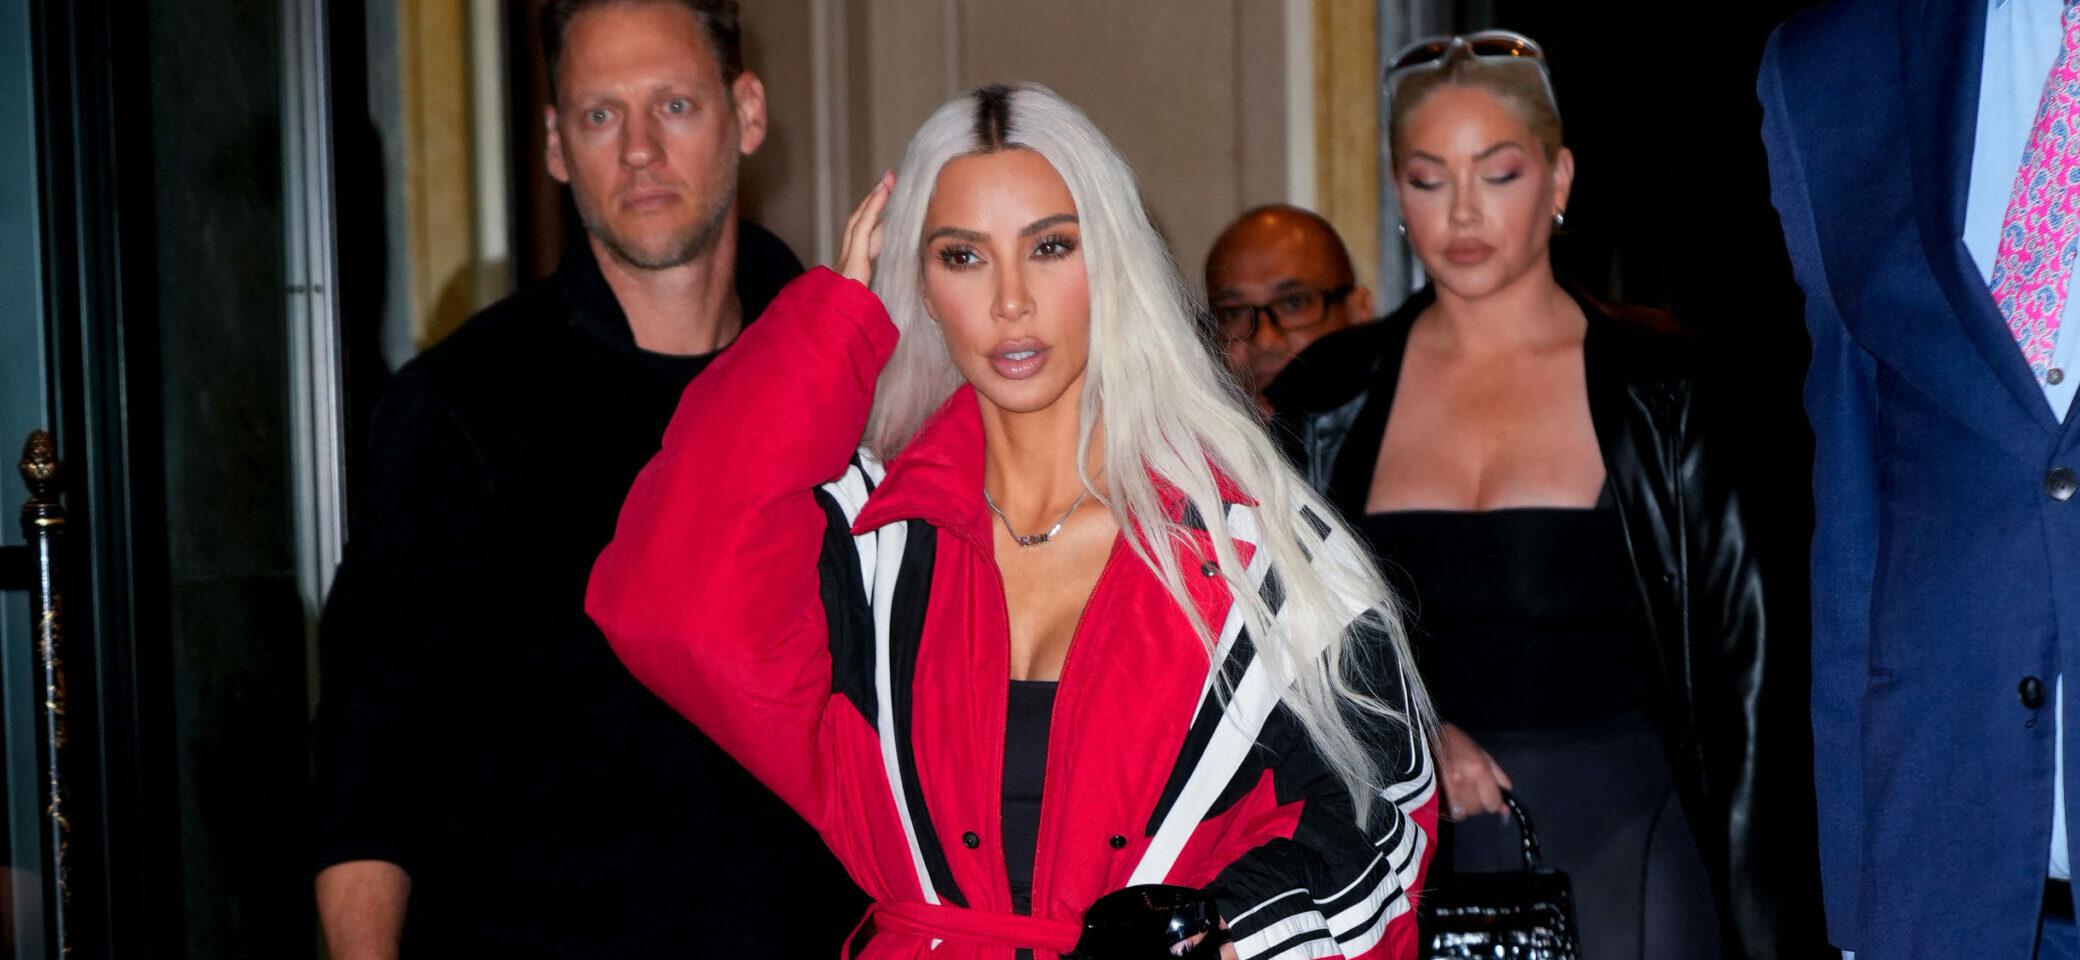 Kim Kardashian still getting trolled for Balenciaga scandal